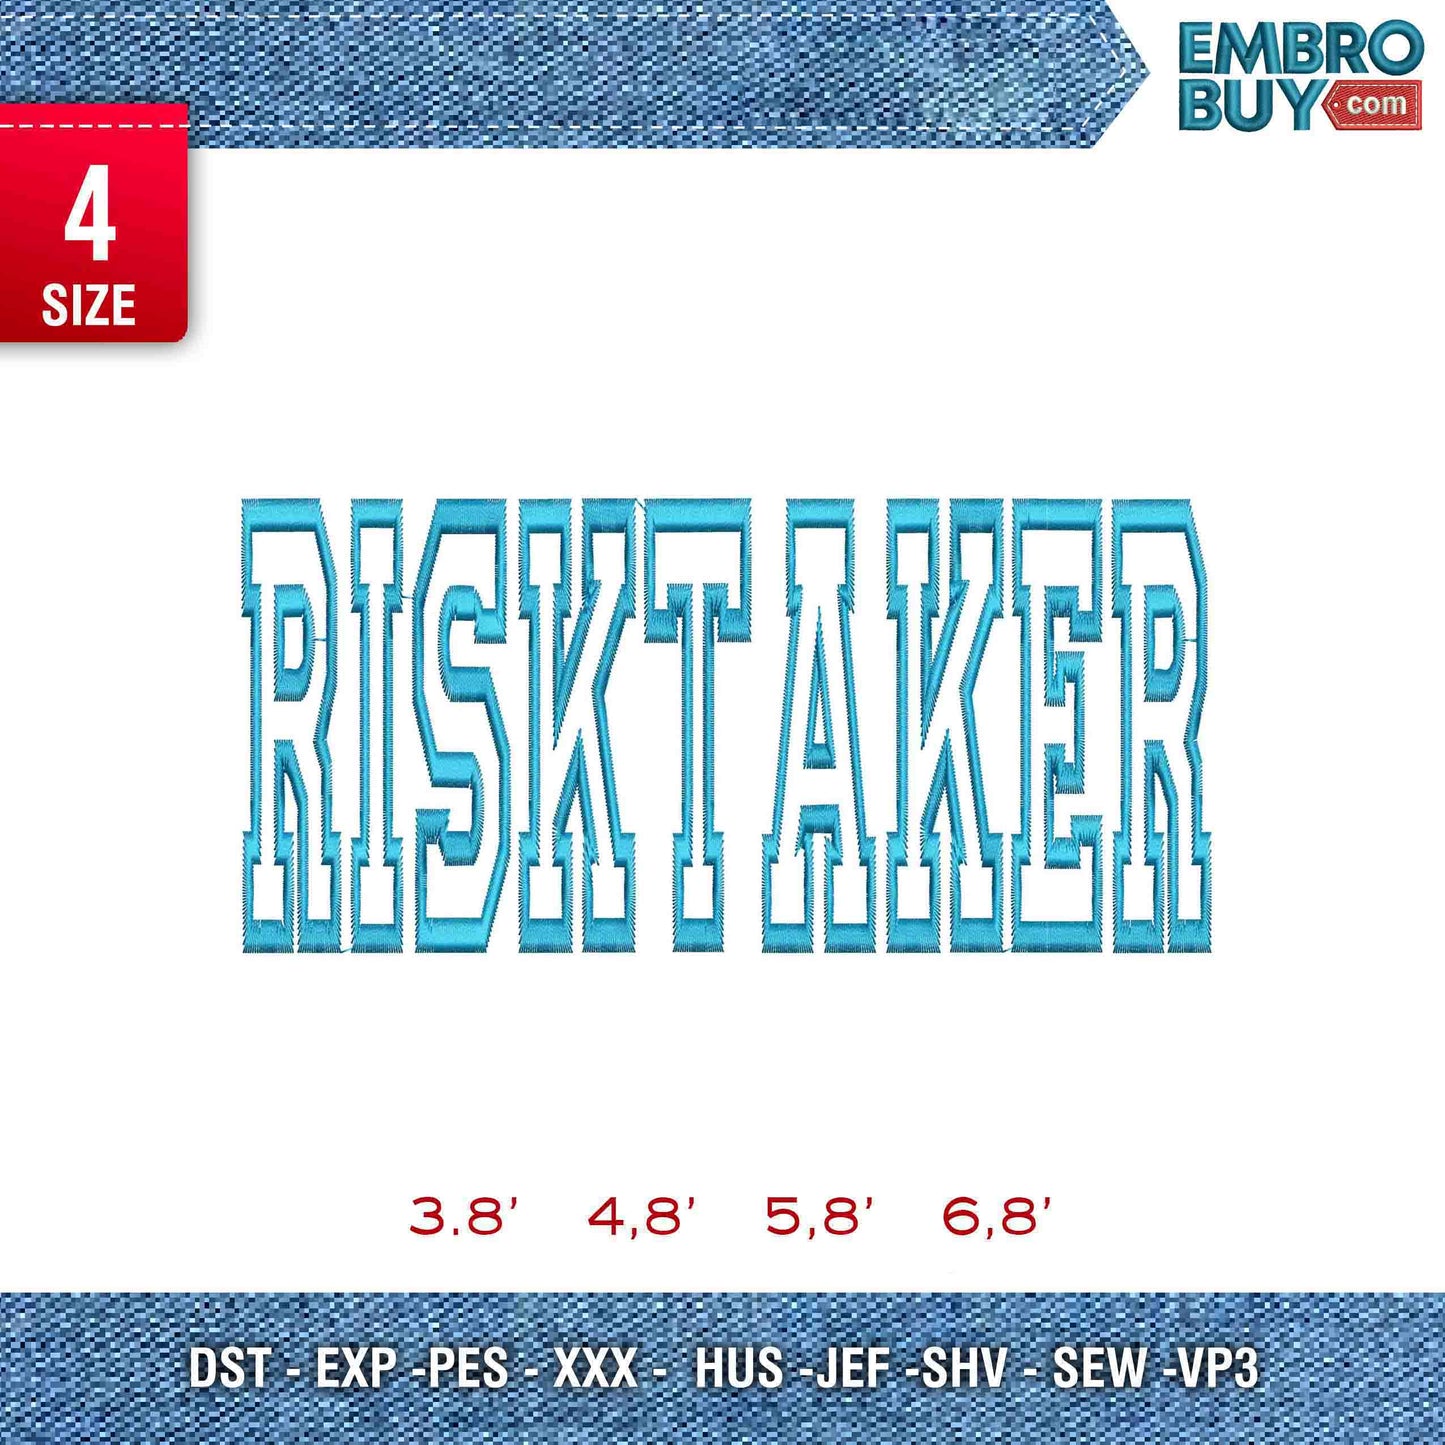 Risktaker 2